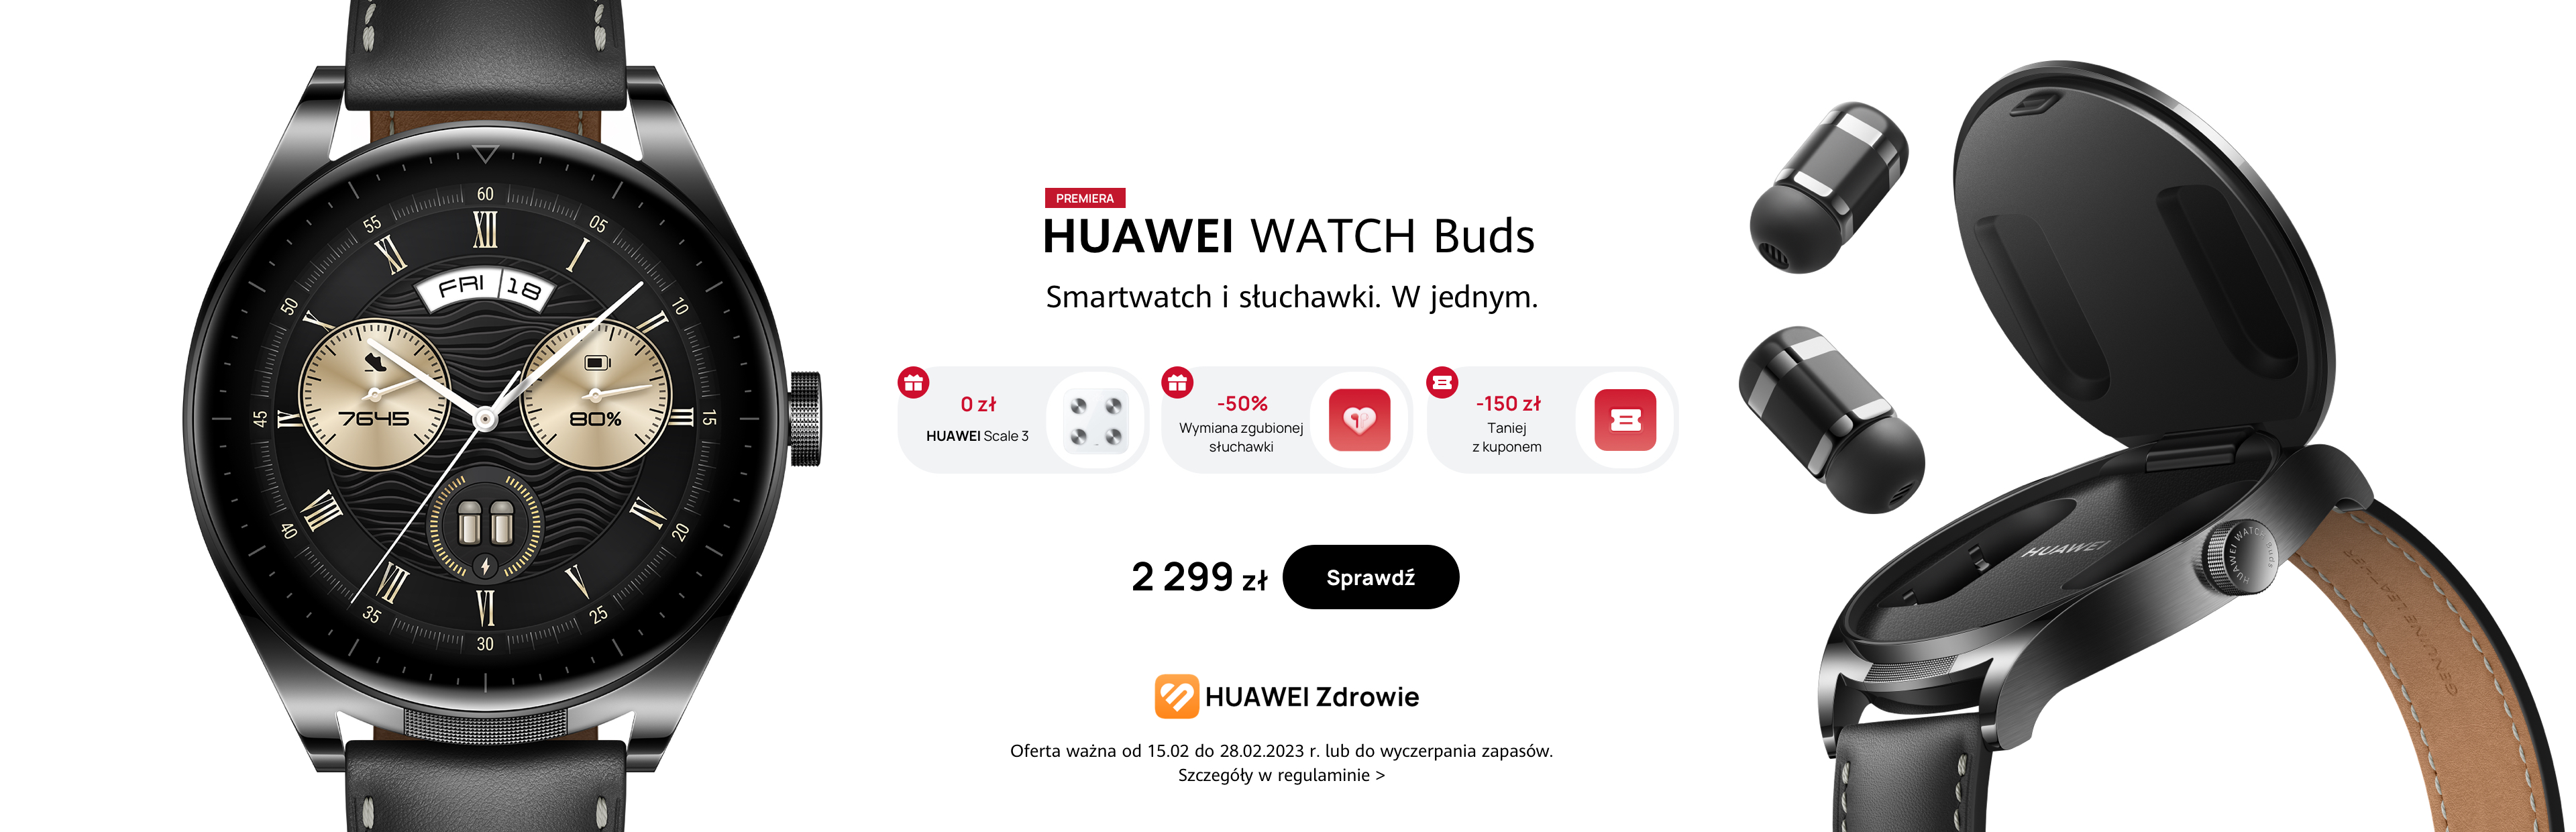 HUAWEI WATCH Buds oferta przedsprzedaÅ¼owa poziom